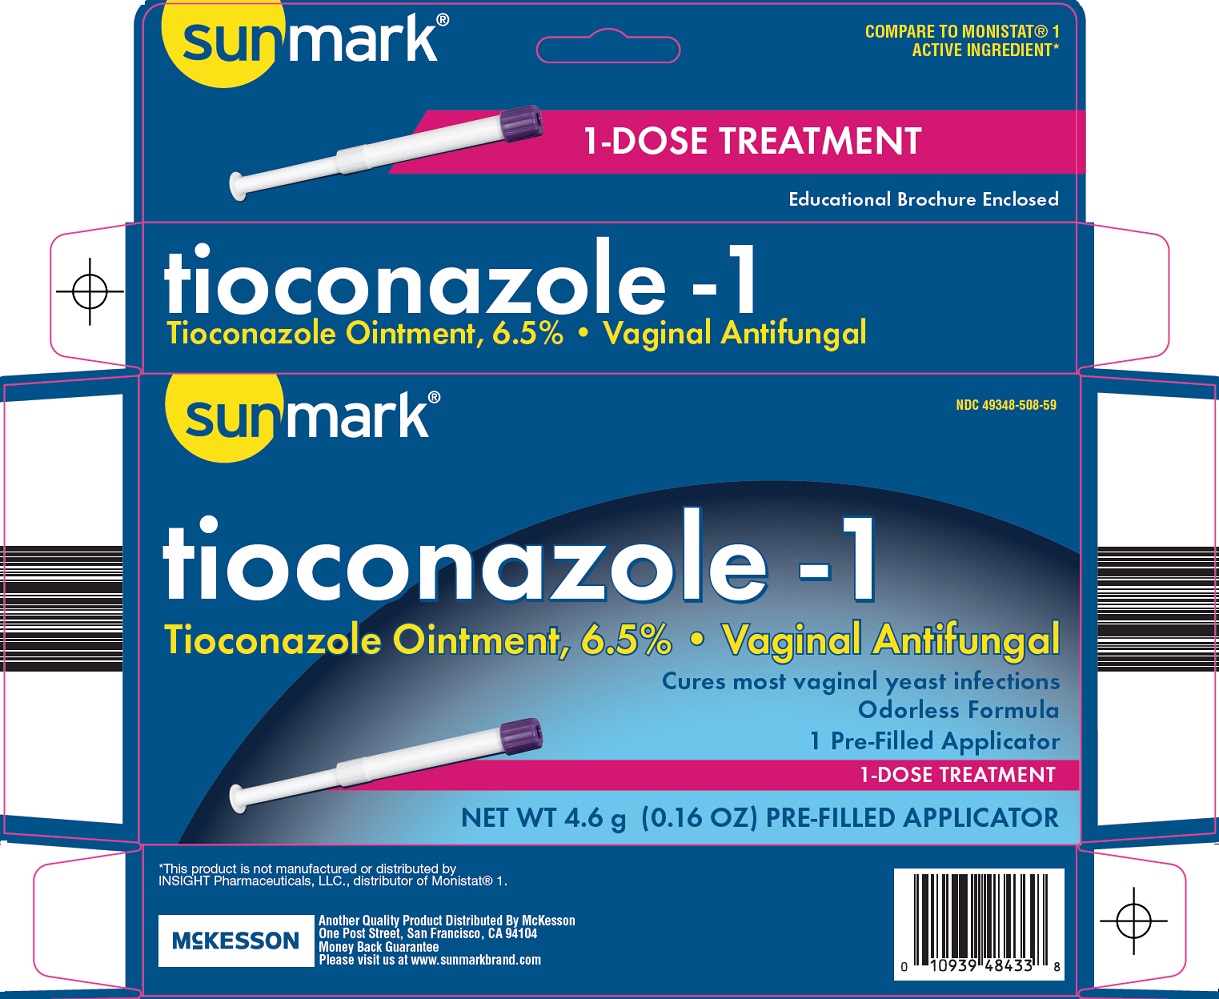 Sunmark Tioconazole - 1 Image 1